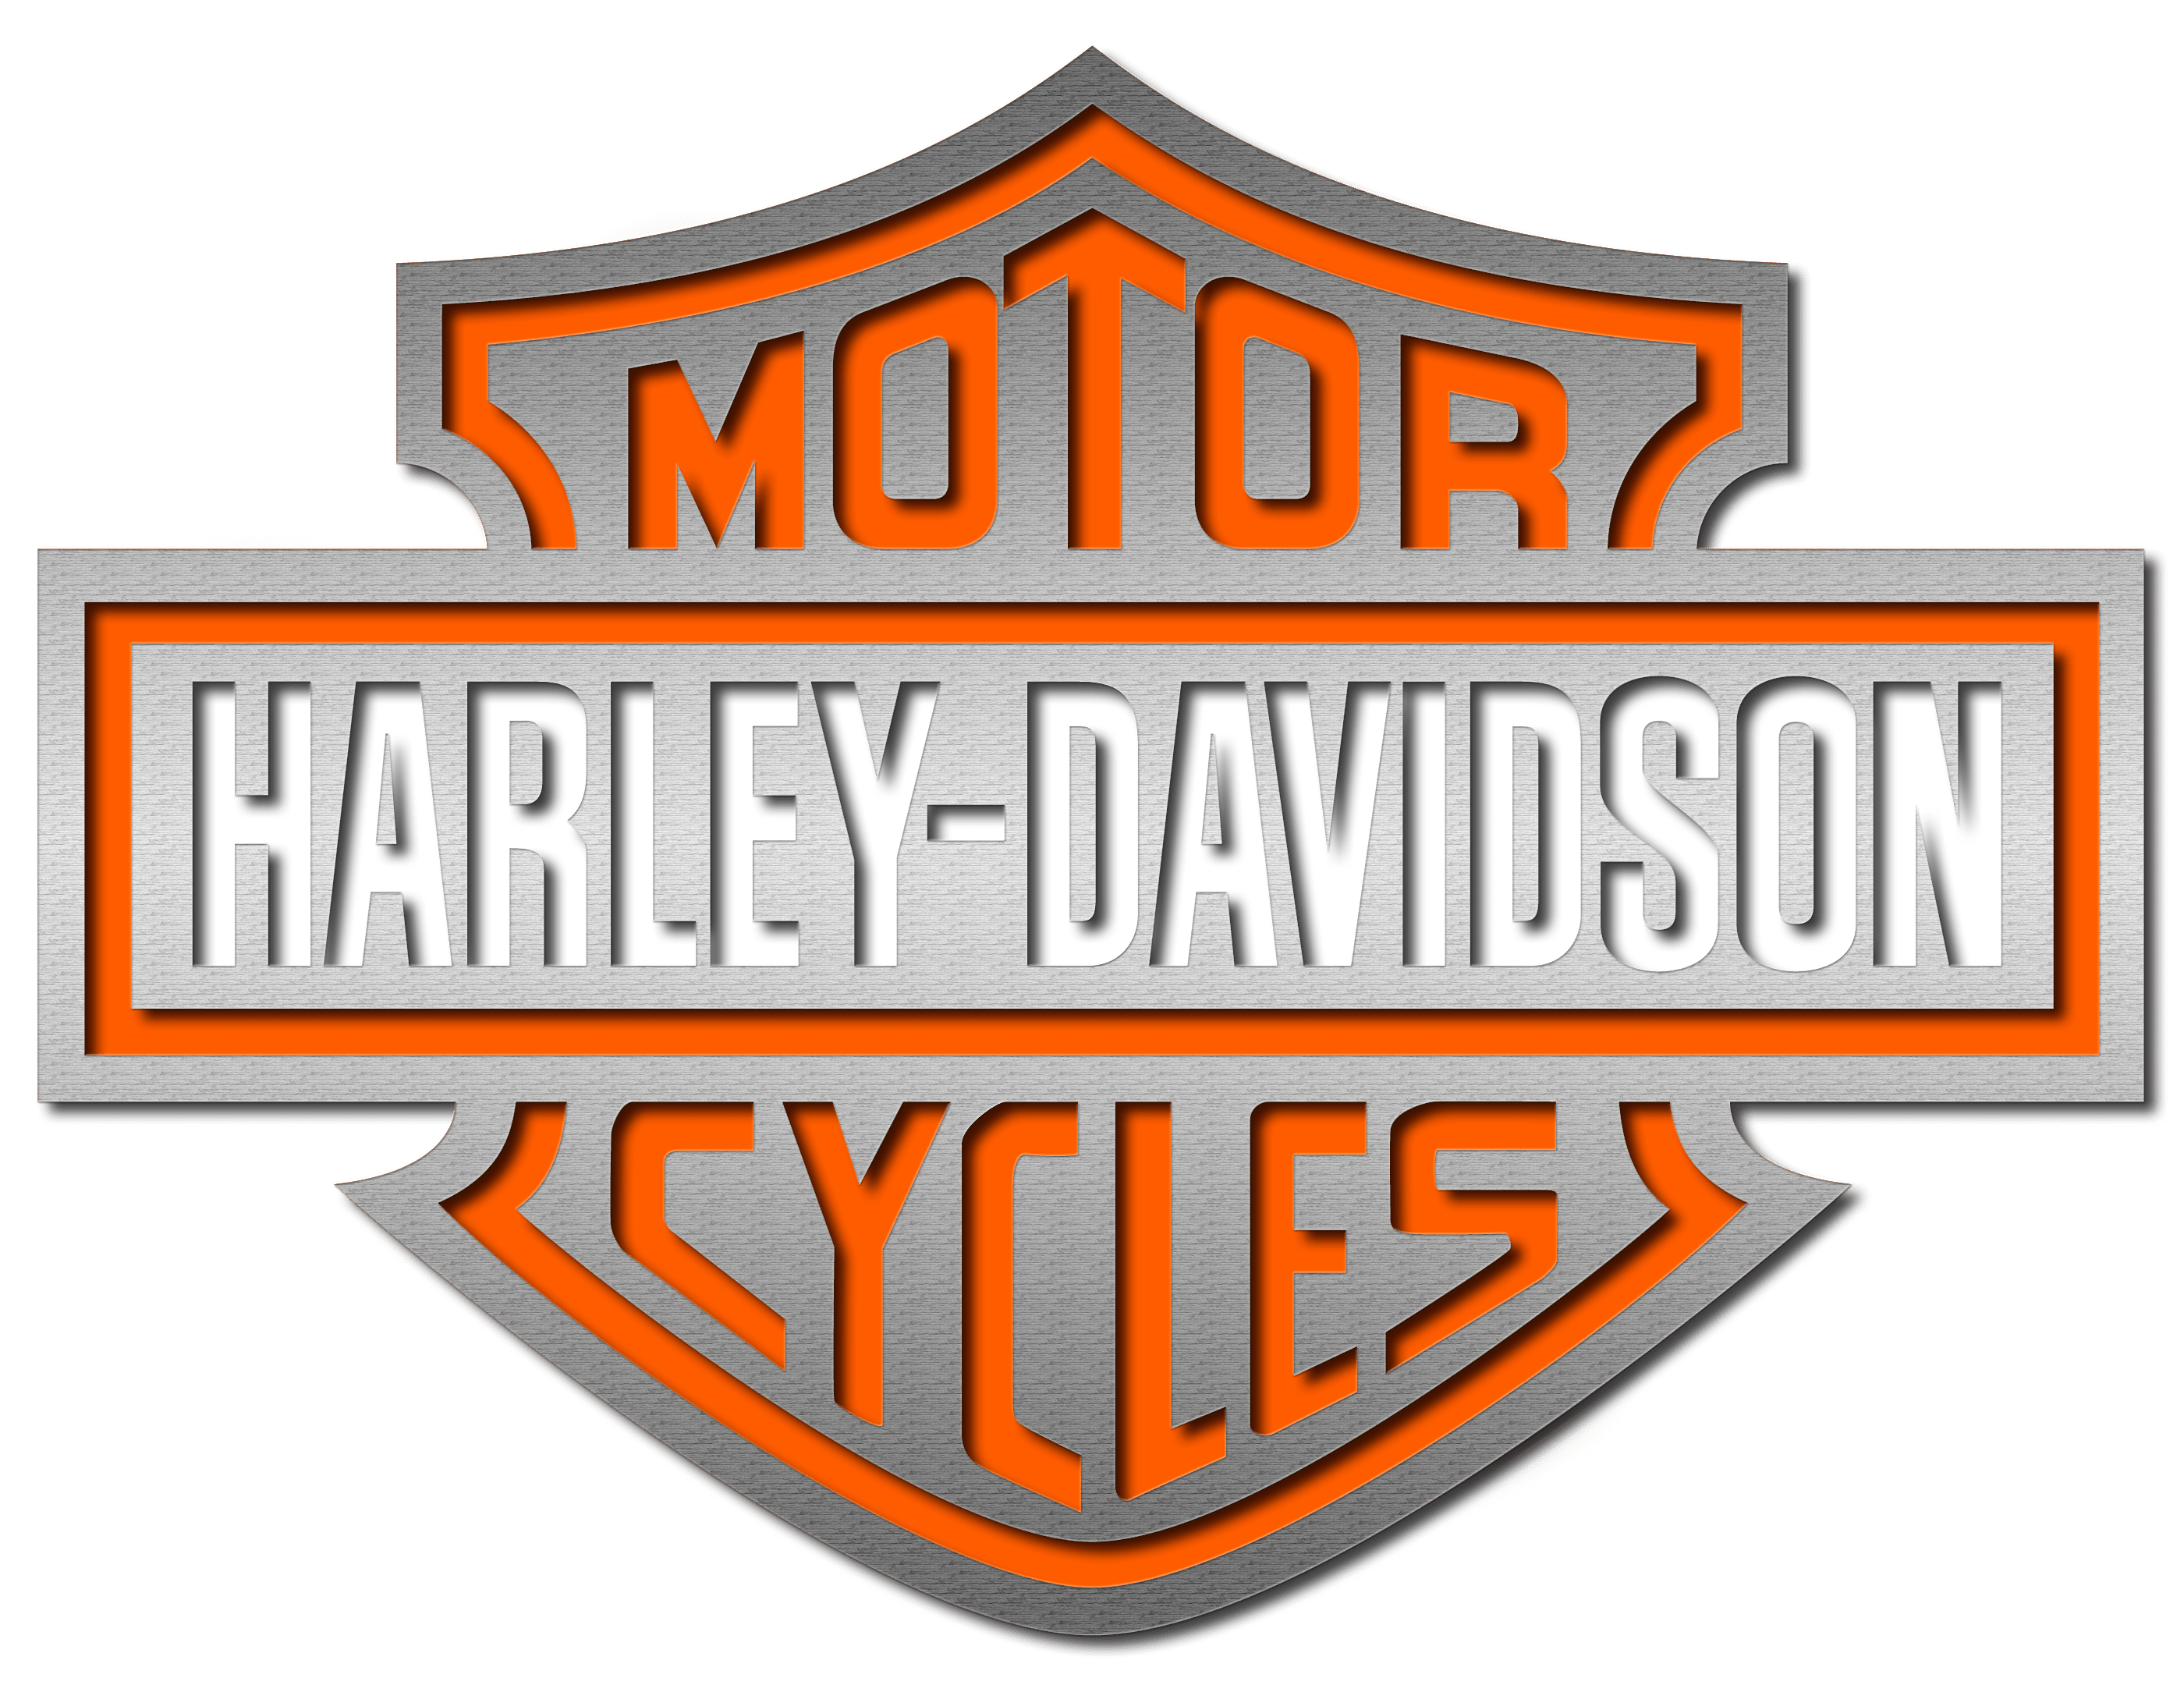 Harley Davidson Png Logo Free Transparent Png Logos